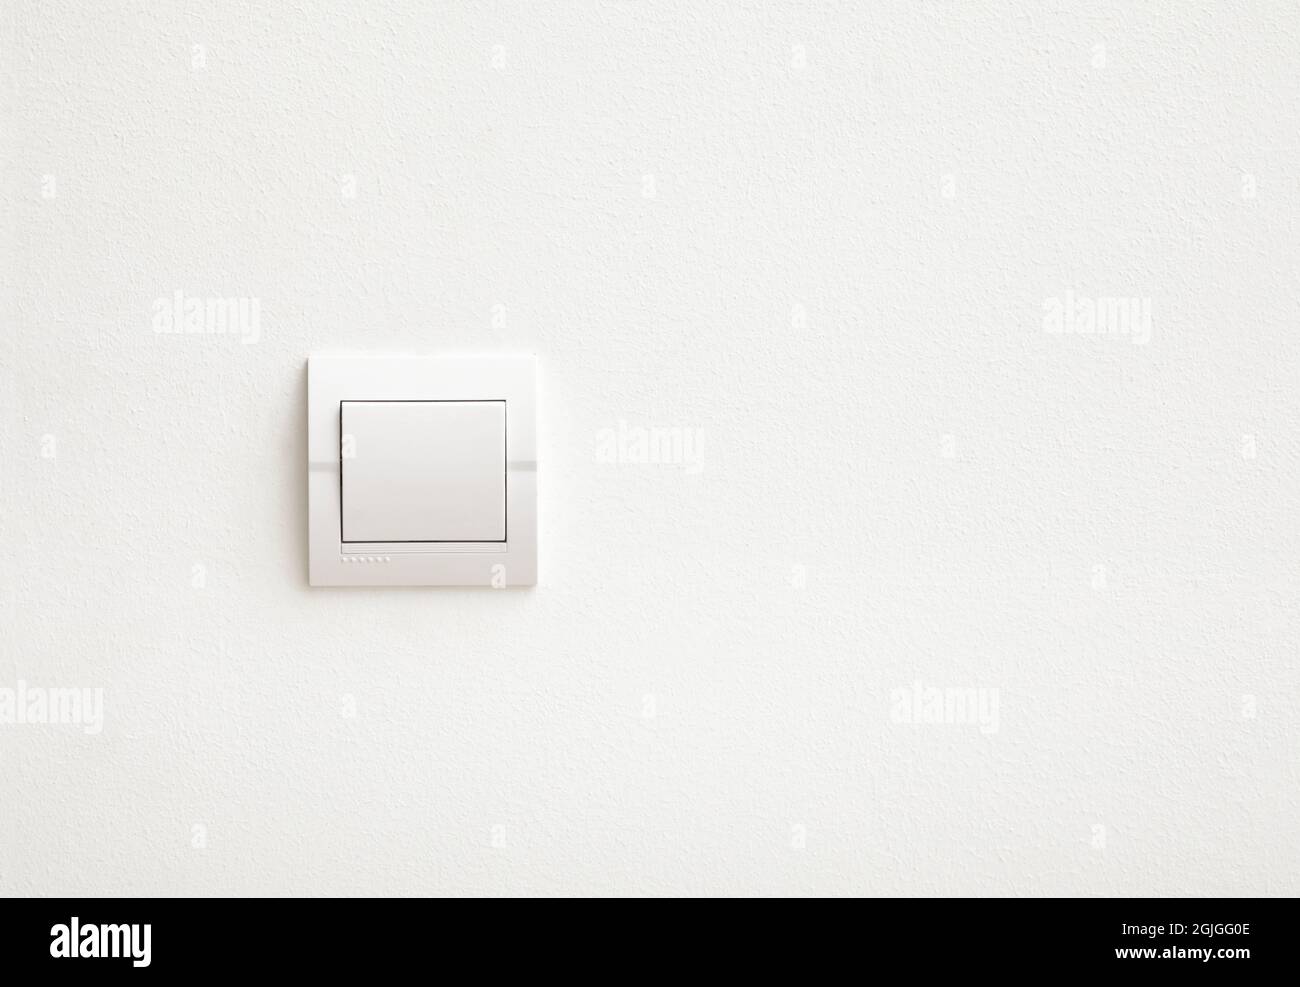 pared blanca con un interruptor de luz 1307568 Foto de stock en